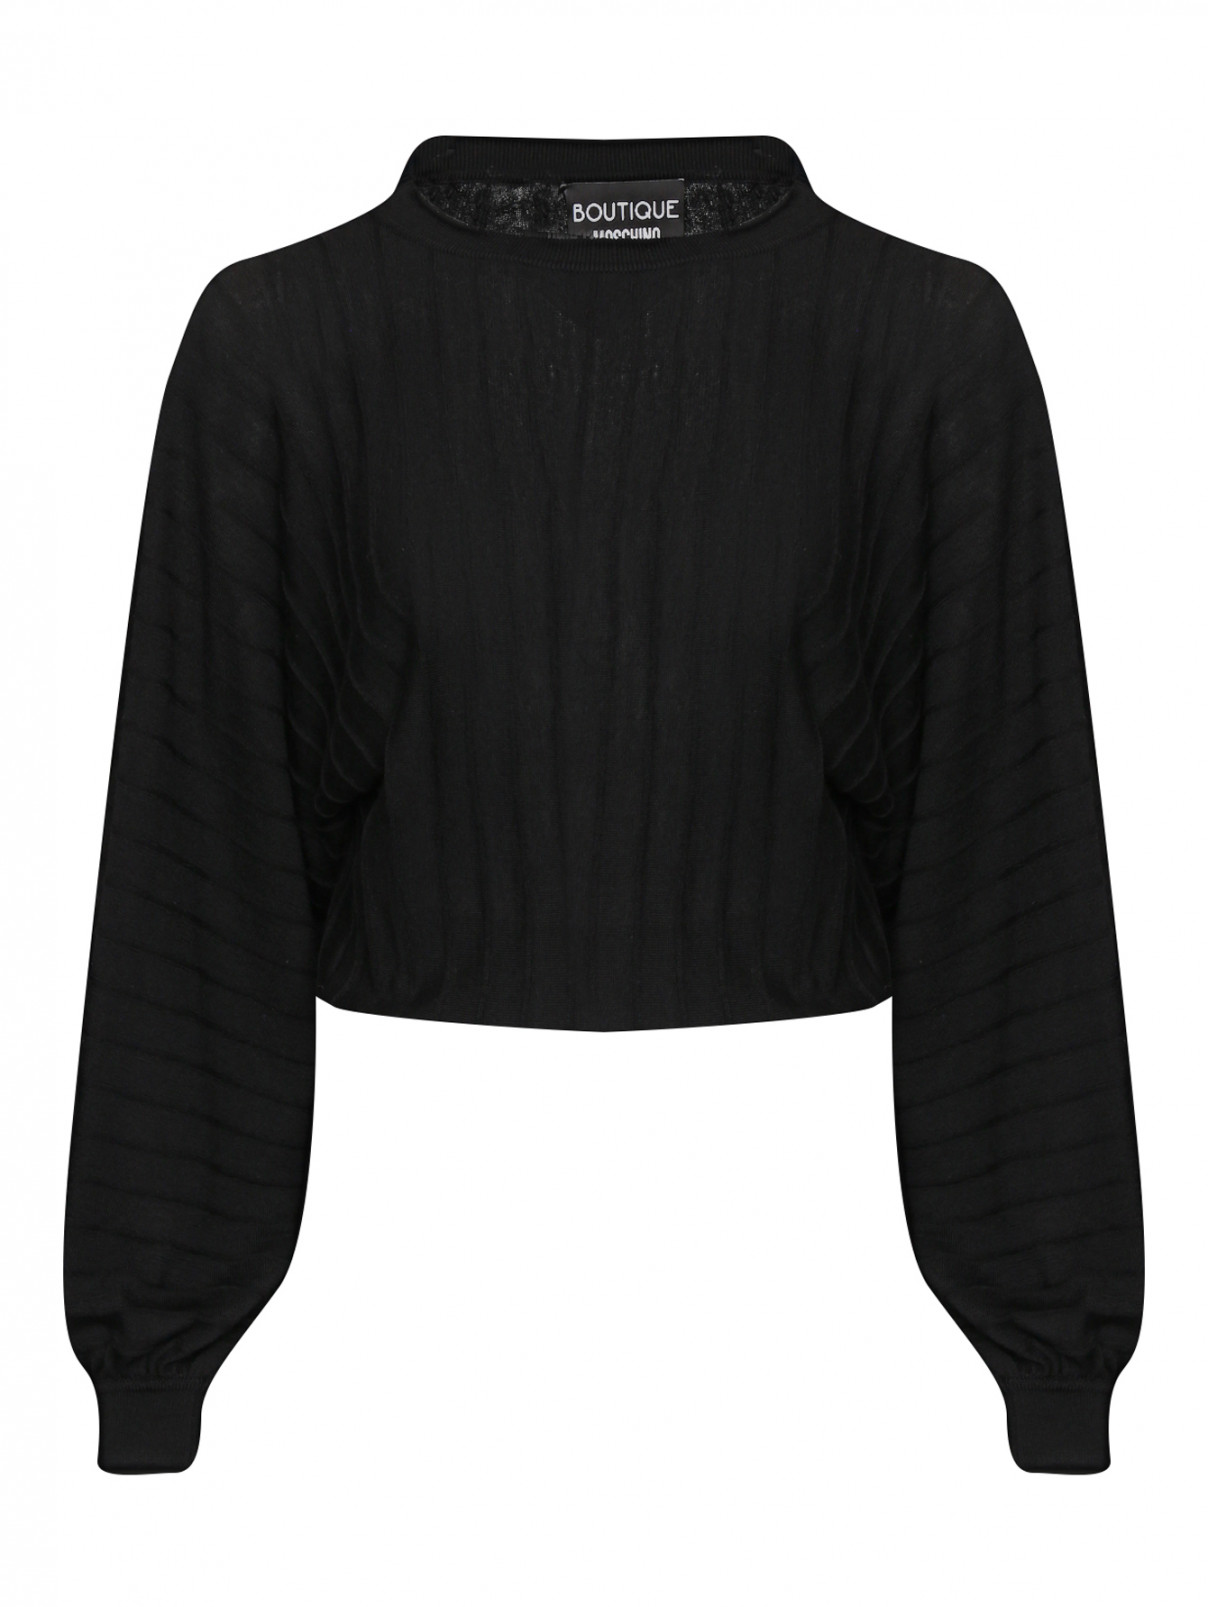 Джемпер из шерсти свободного кроя Moschino Boutique  –  Общий вид  – Цвет:  Черный